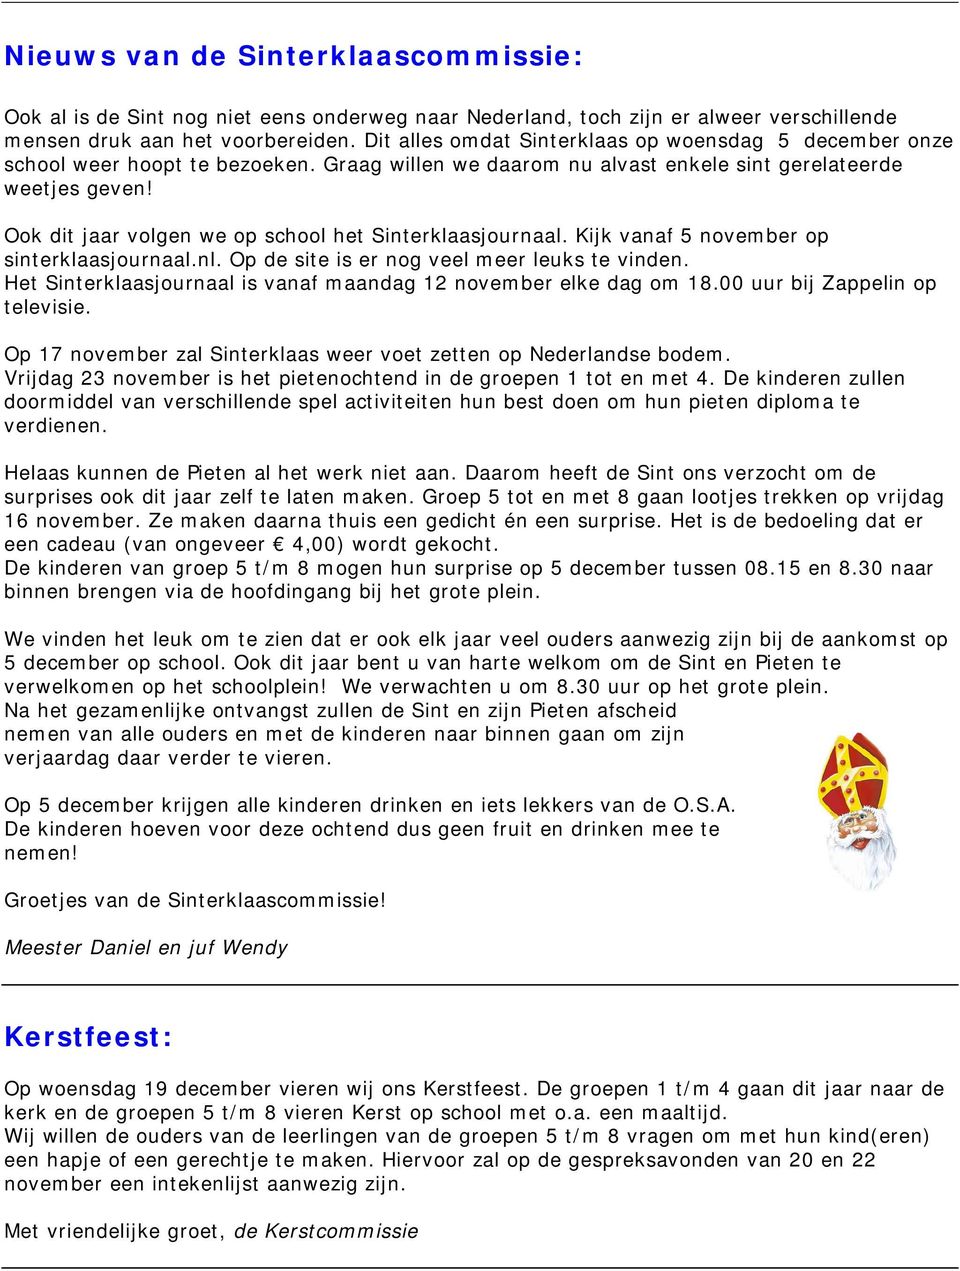 Ook dit jaar volgen we op school het Sinterklaasjournaal. Kijk vanaf 5 november op sinterklaasjournaal.nl. Op de site is er nog veel meer leuks te vinden.